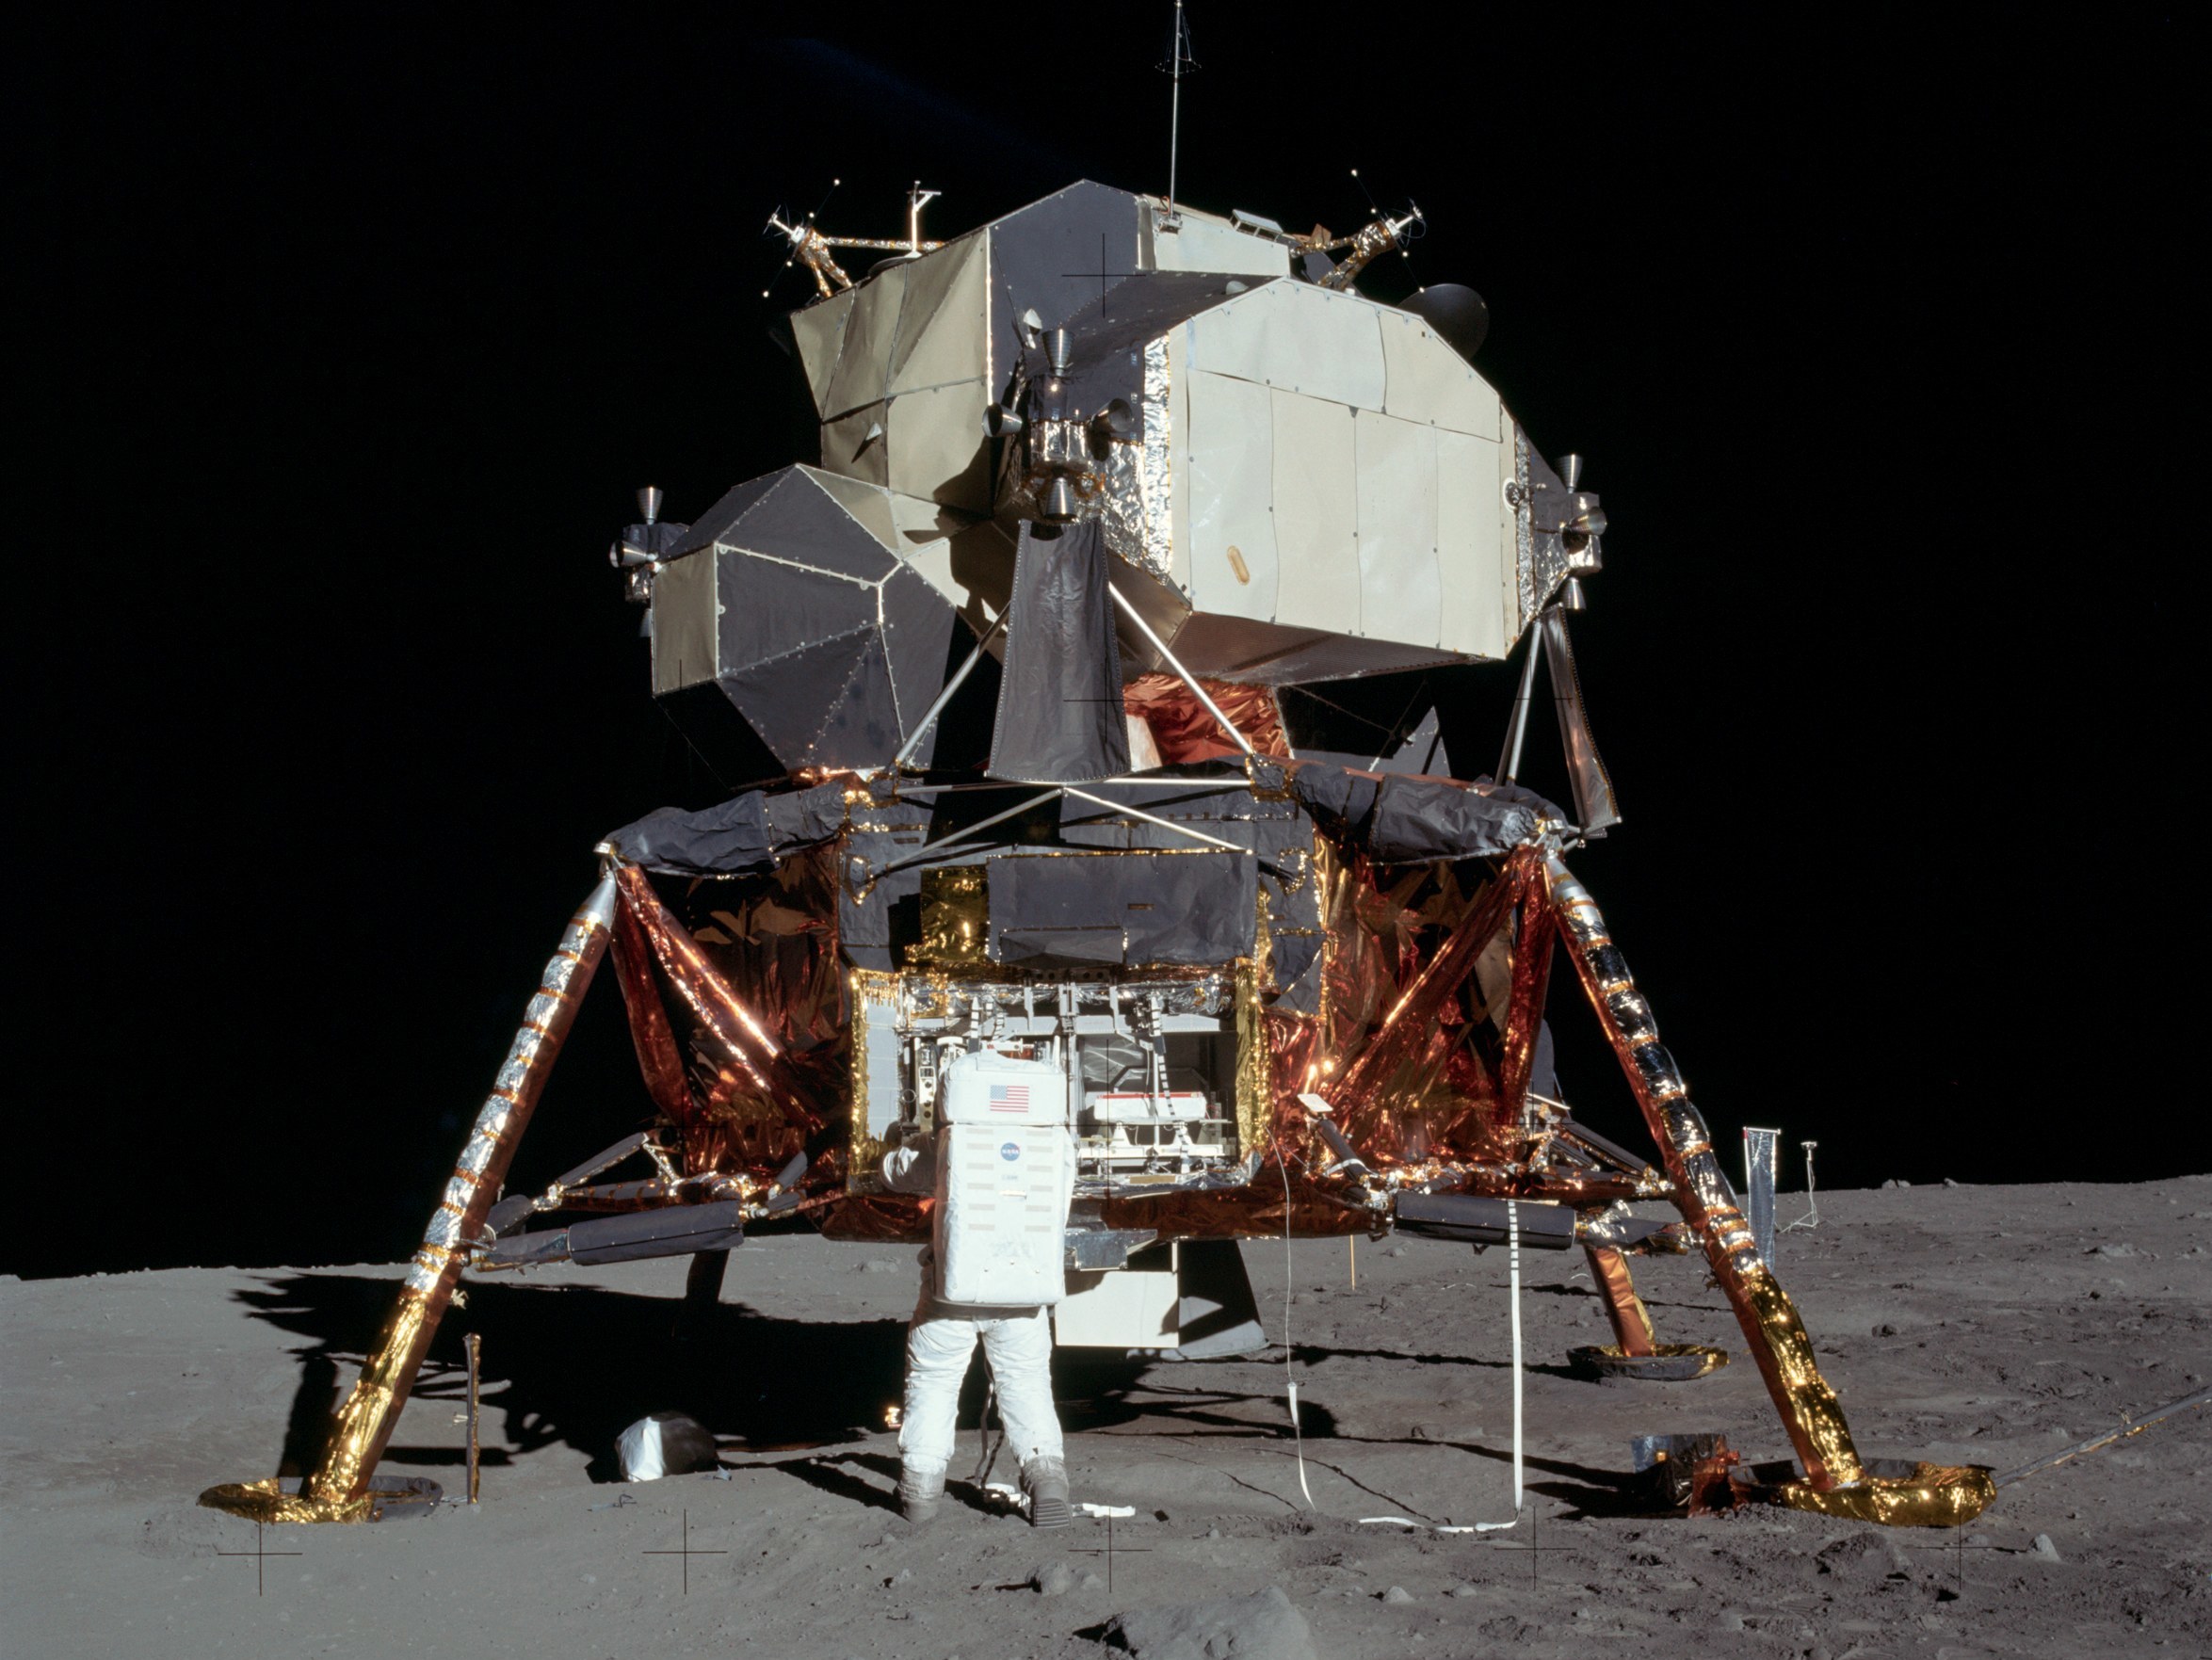 Страны достигшие луны. Аполлон 11. Посадочный модуль Аполлон 11. Космический корабль Аполлон 11. Апполо 11 на Луне.